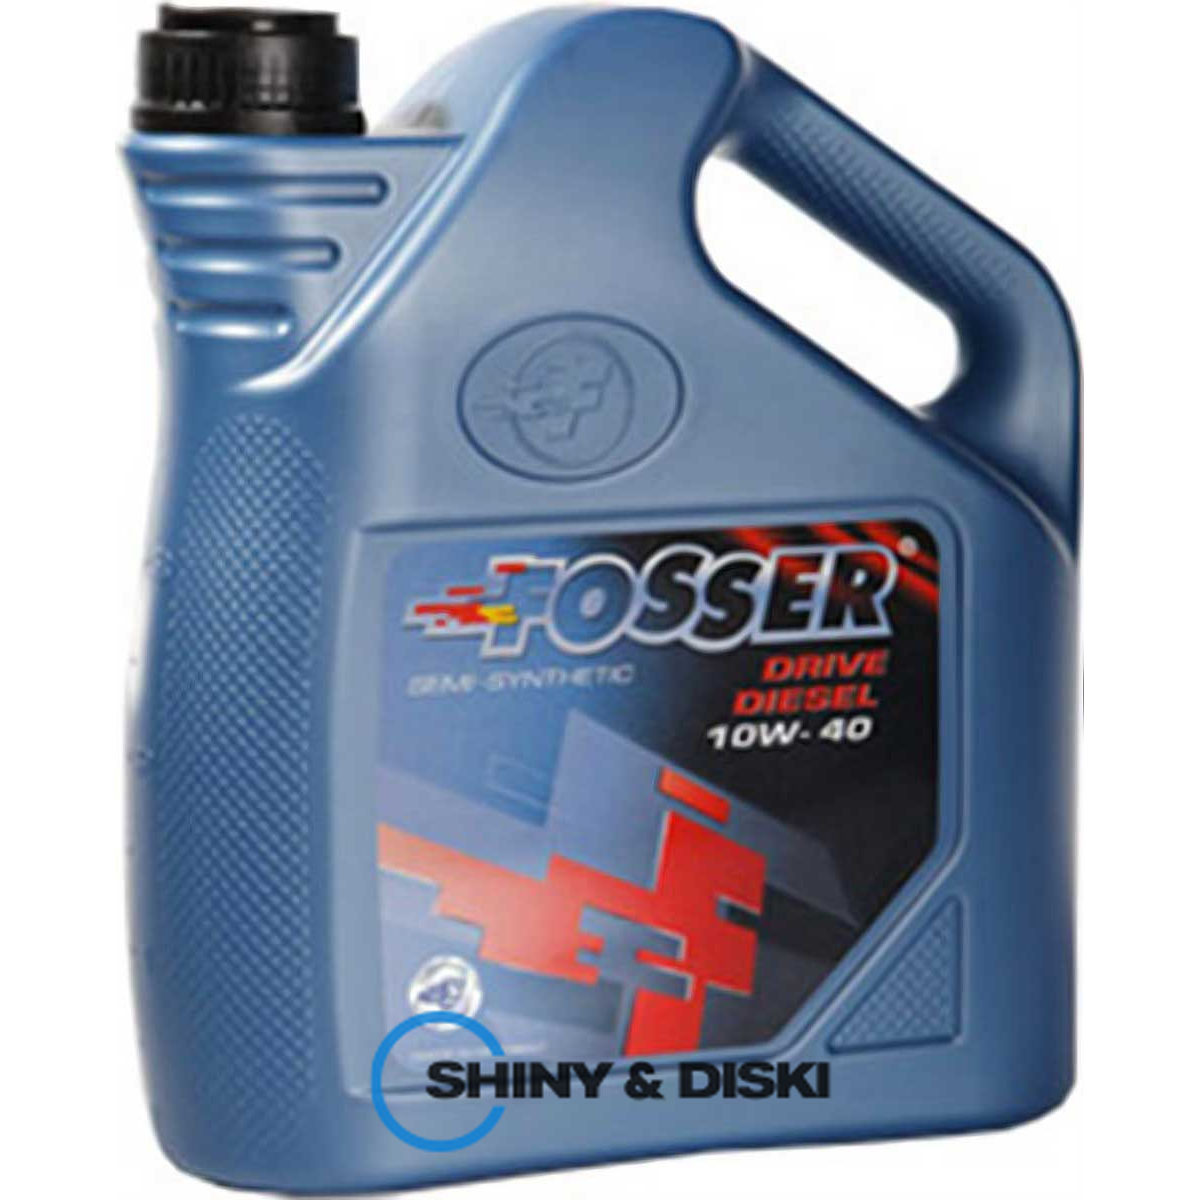 fosser drive diesel 10w-40 (4л)